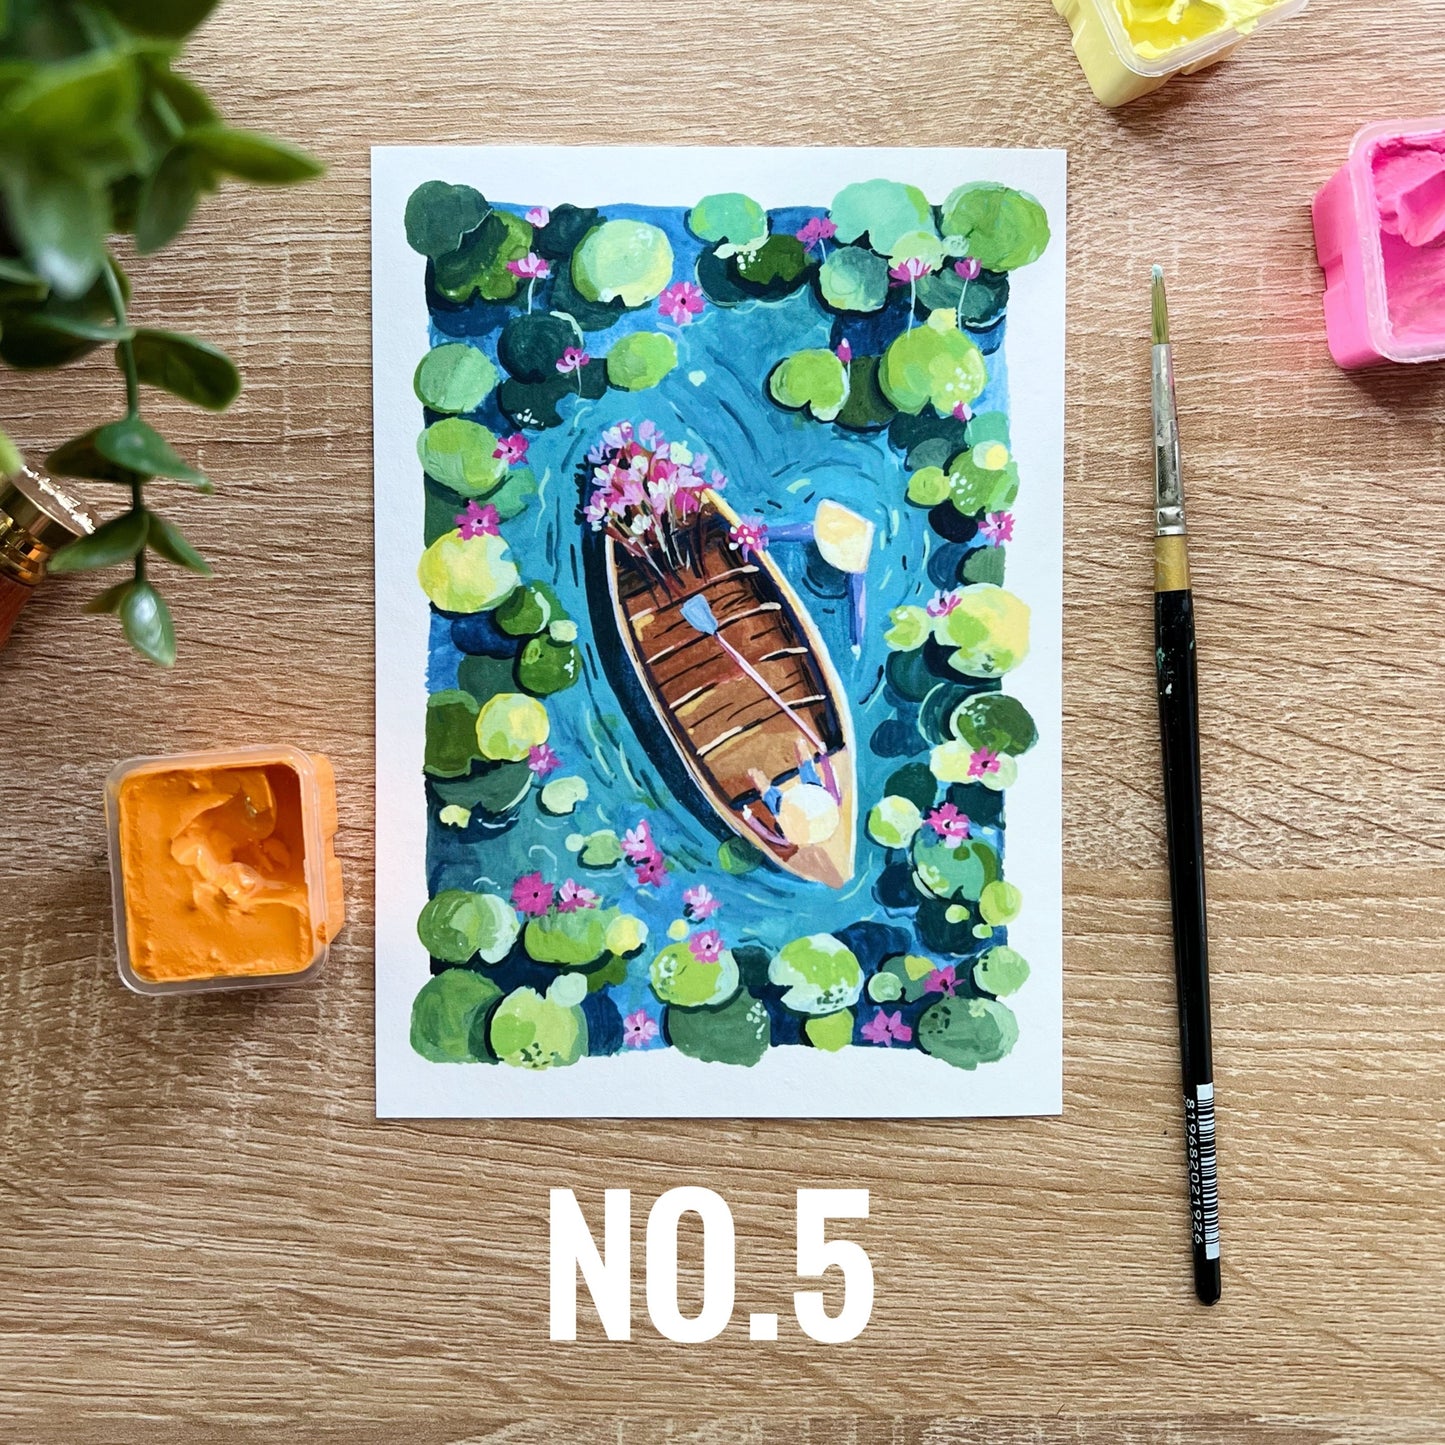 5x7 Postcard prints- Lotus pond and Koi fish art